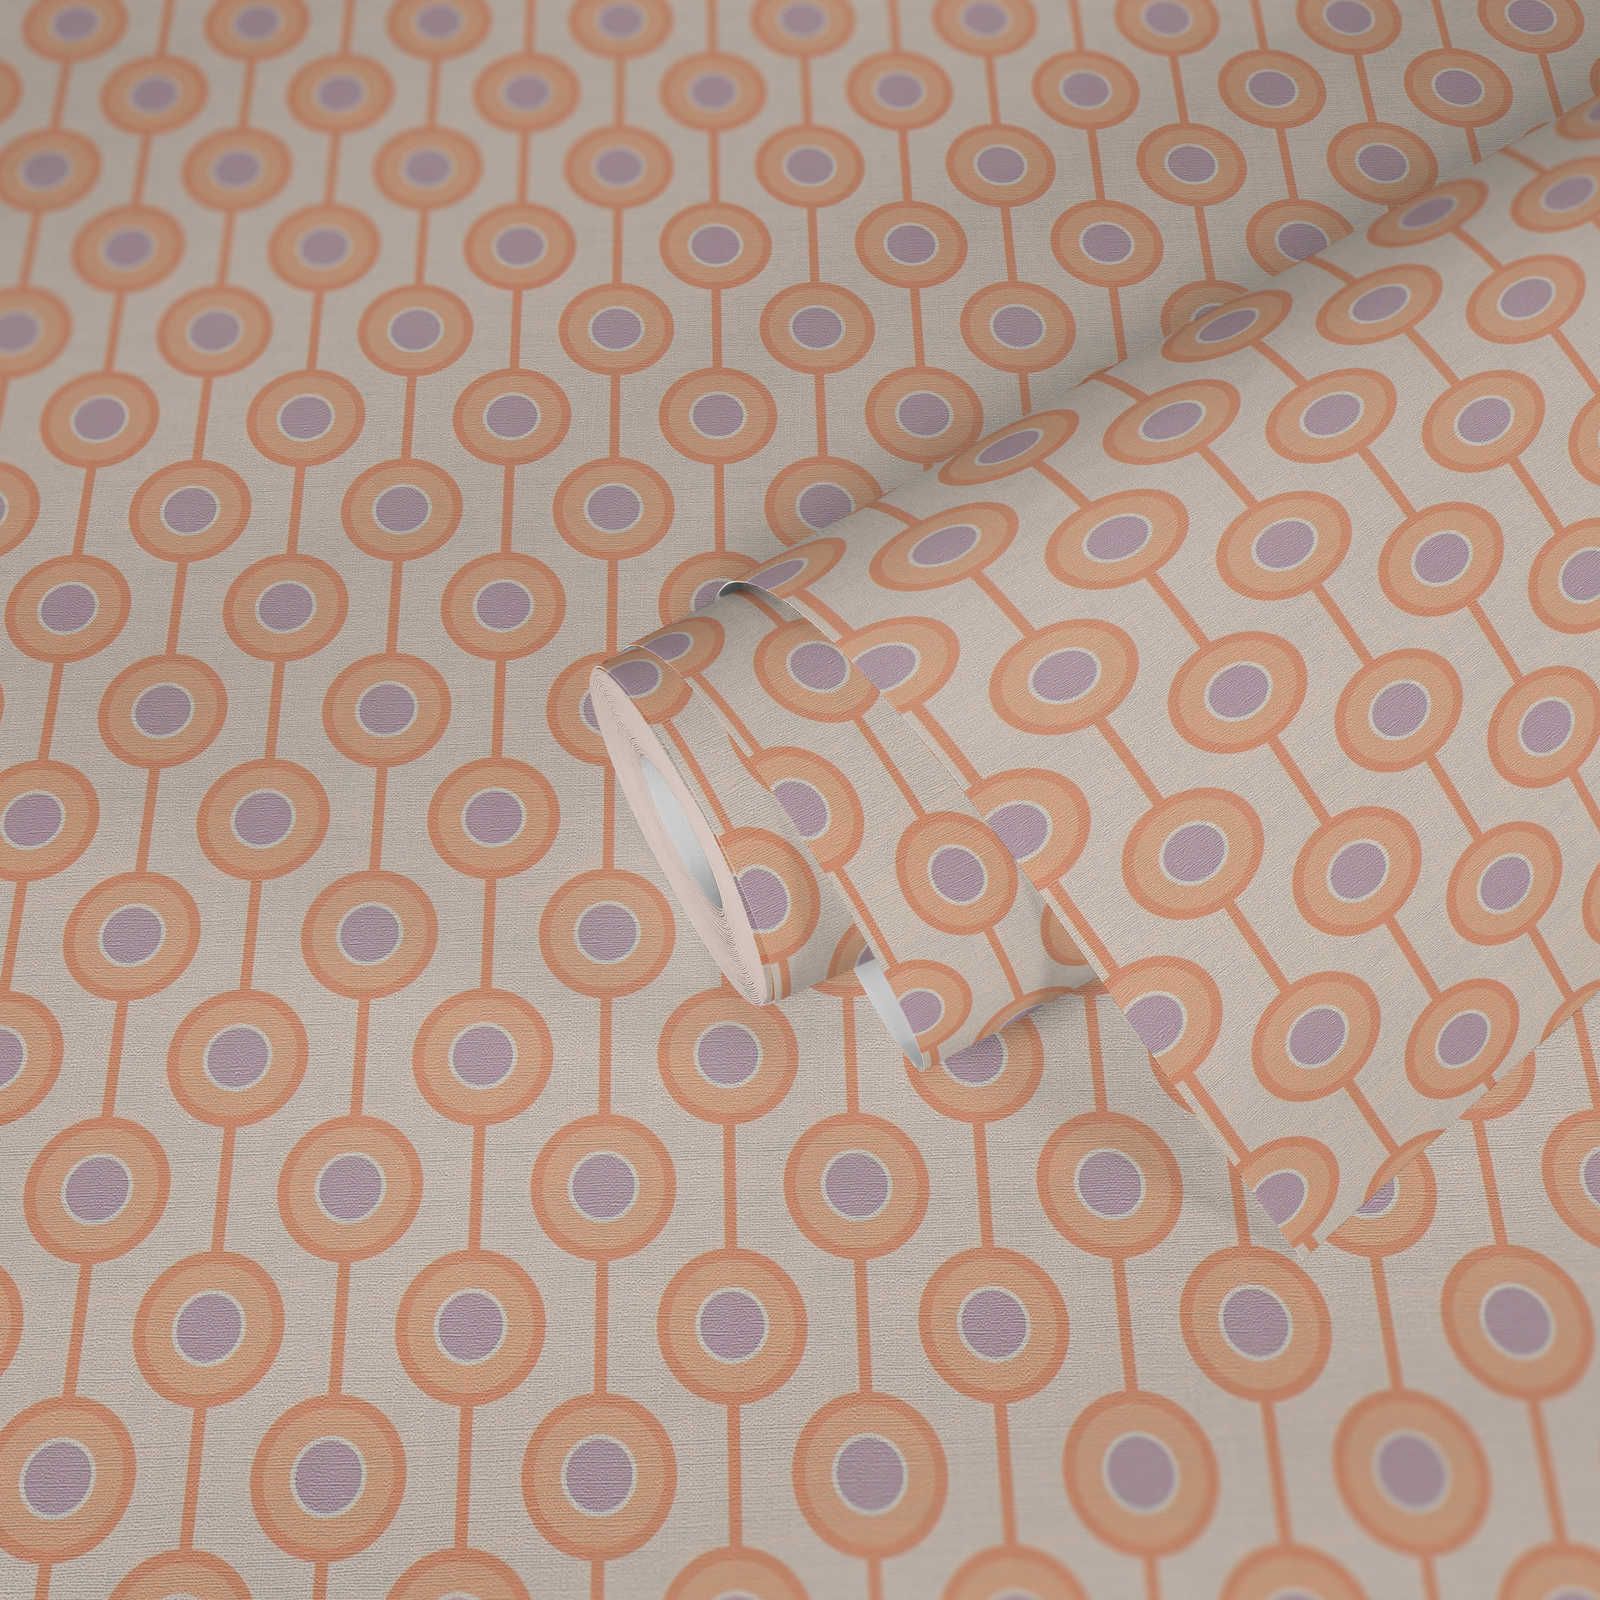             Papel pintado no tejido con motivos circulares en colores suaves - beige, naranja, morado
        